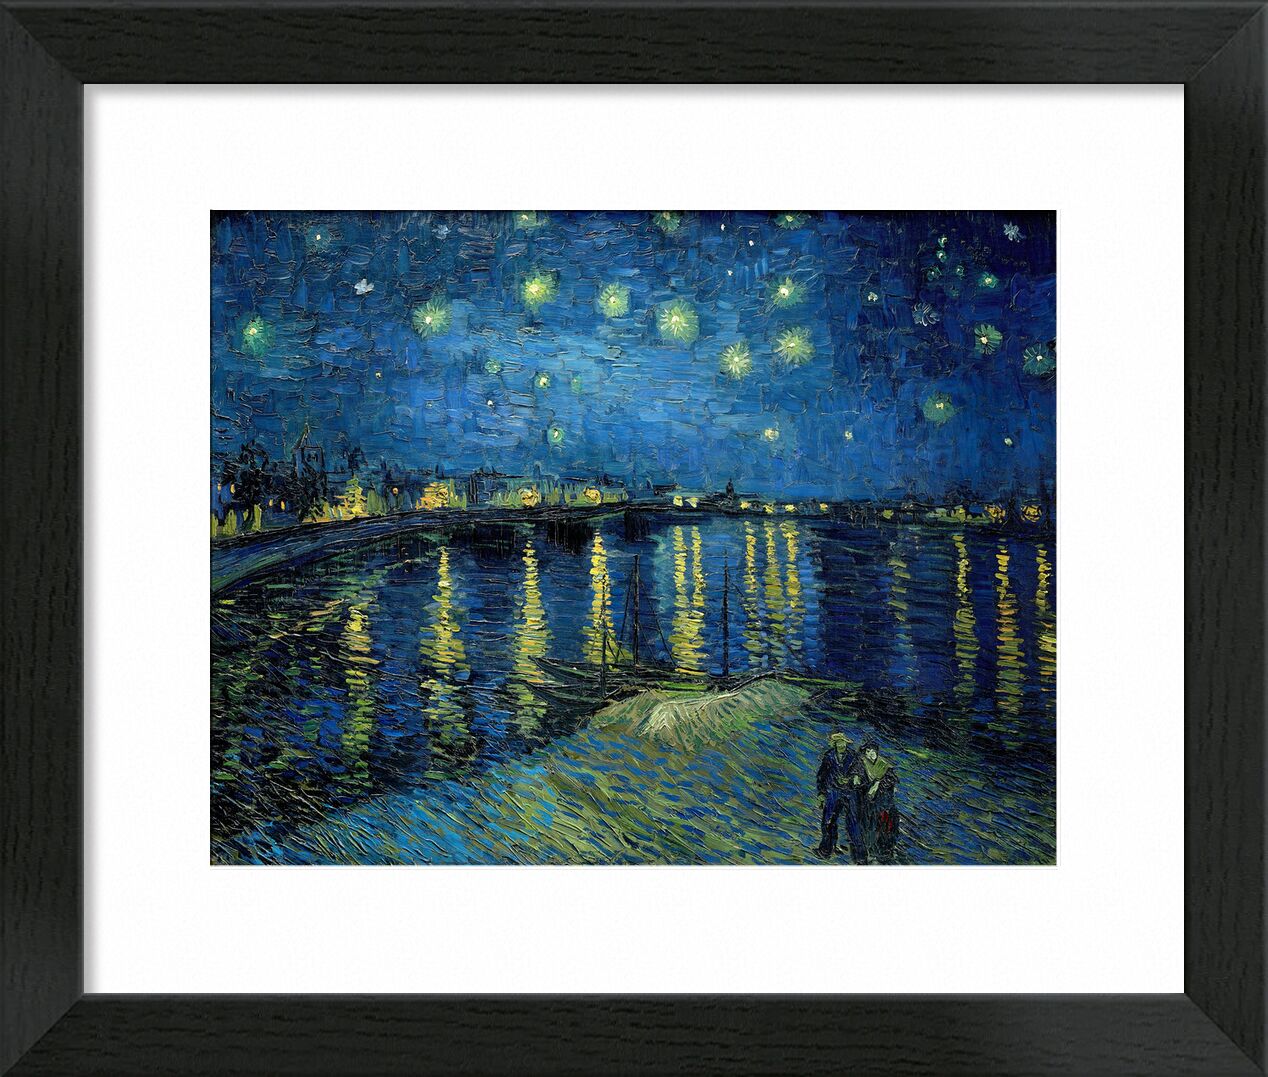 Starry Night Over the Rhone - Van Gogh desde Bellas artes, Prodi Art, Van gogh, noche, Puerto, ciudad, estrellas, luces, Pareja, agua